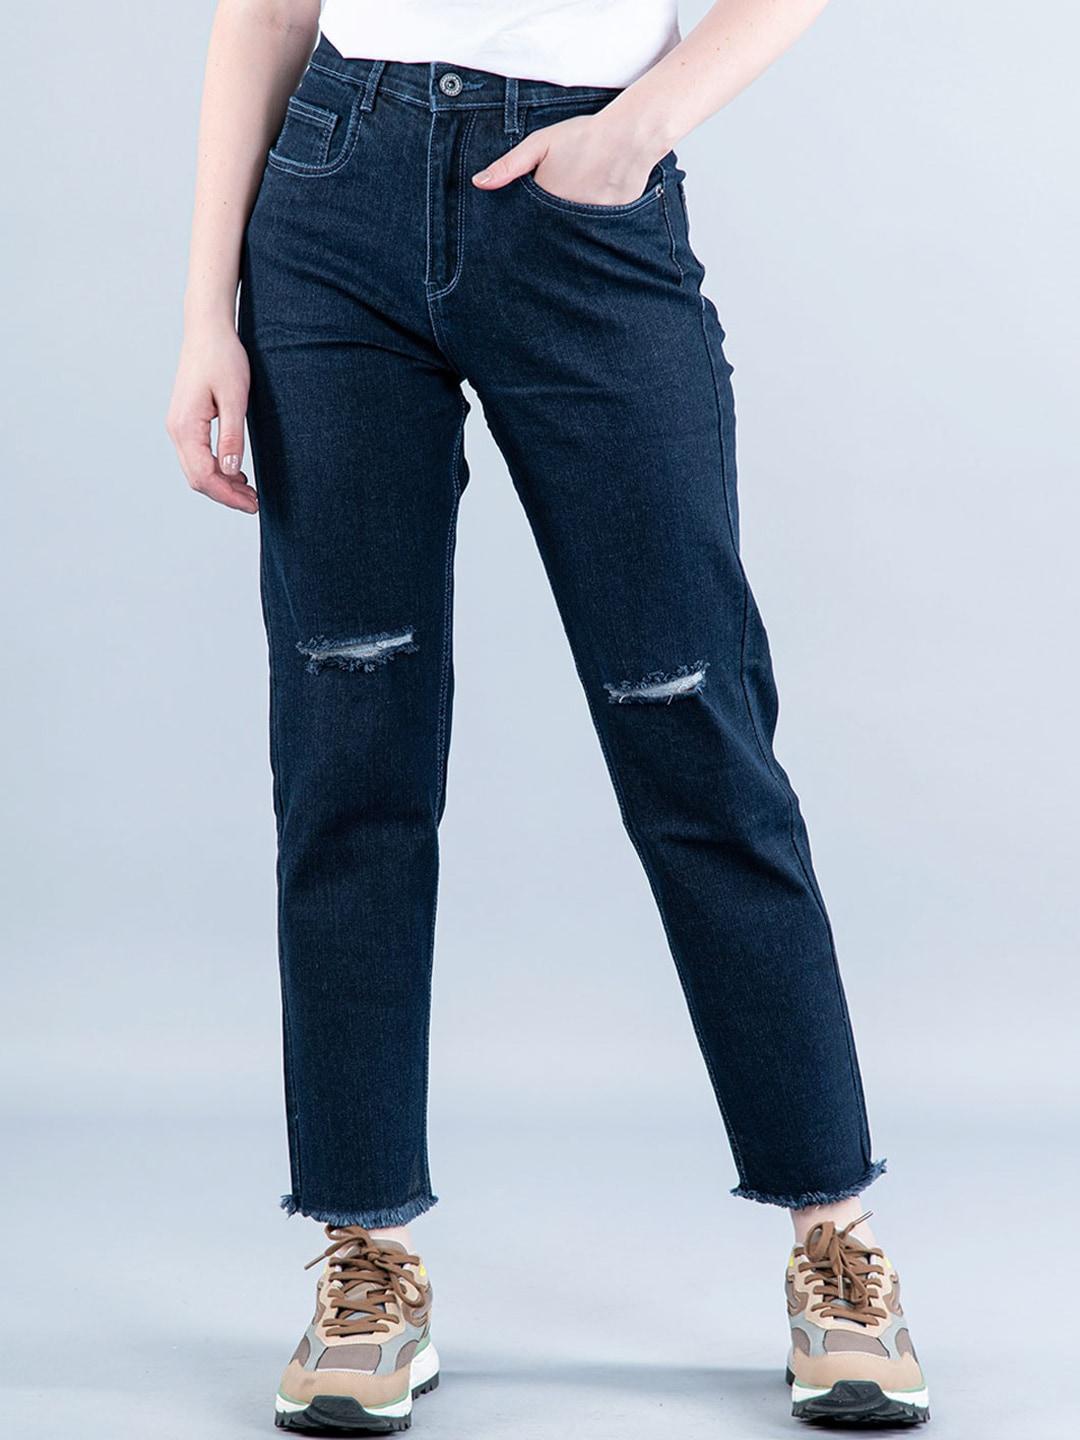 tistabene women comfort slash knee stretchable jeans